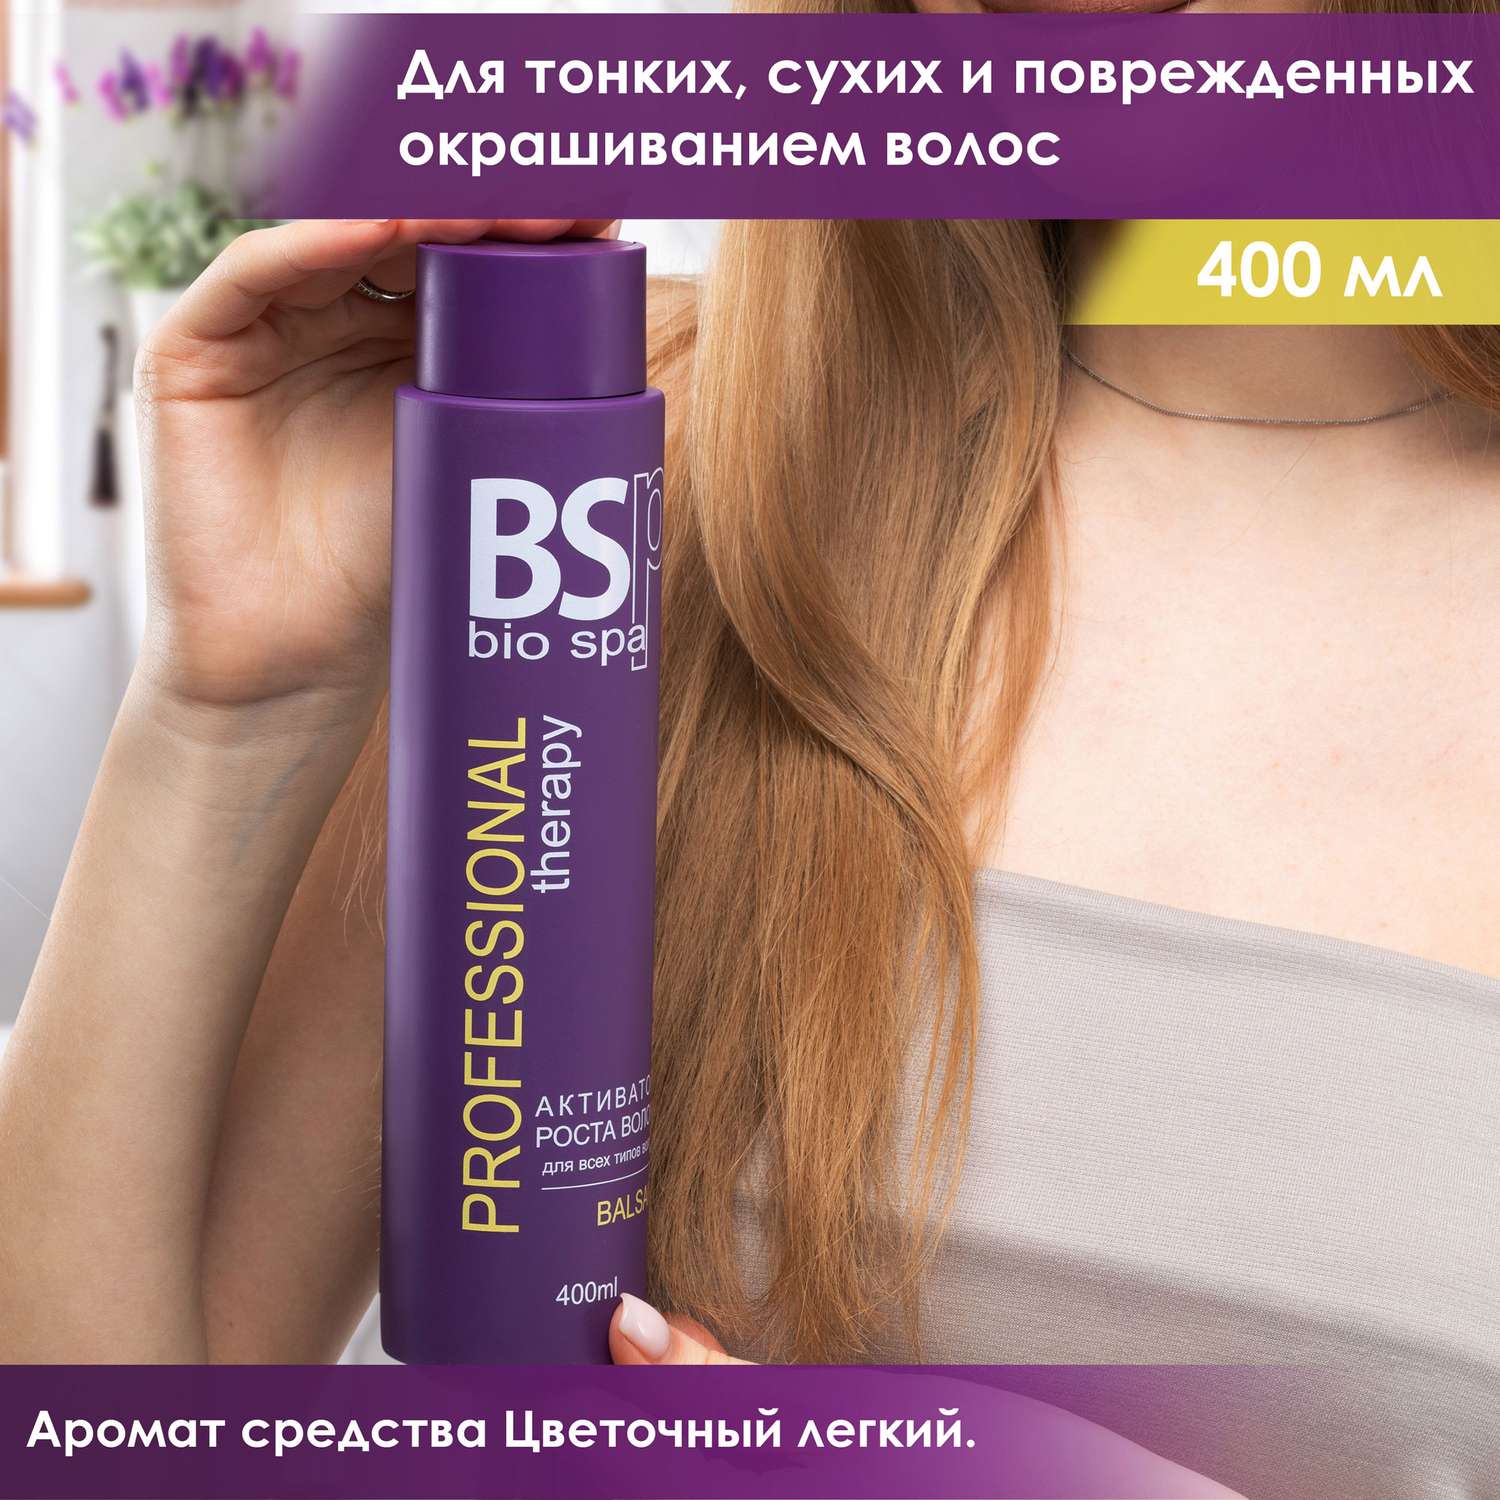 Бальзам BSP bio spa Активатор роста волос 400 мл - фото 3